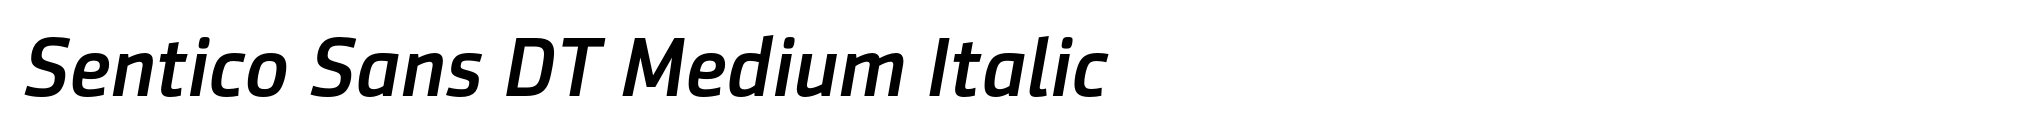 Sentico Sans DT Medium Italic image